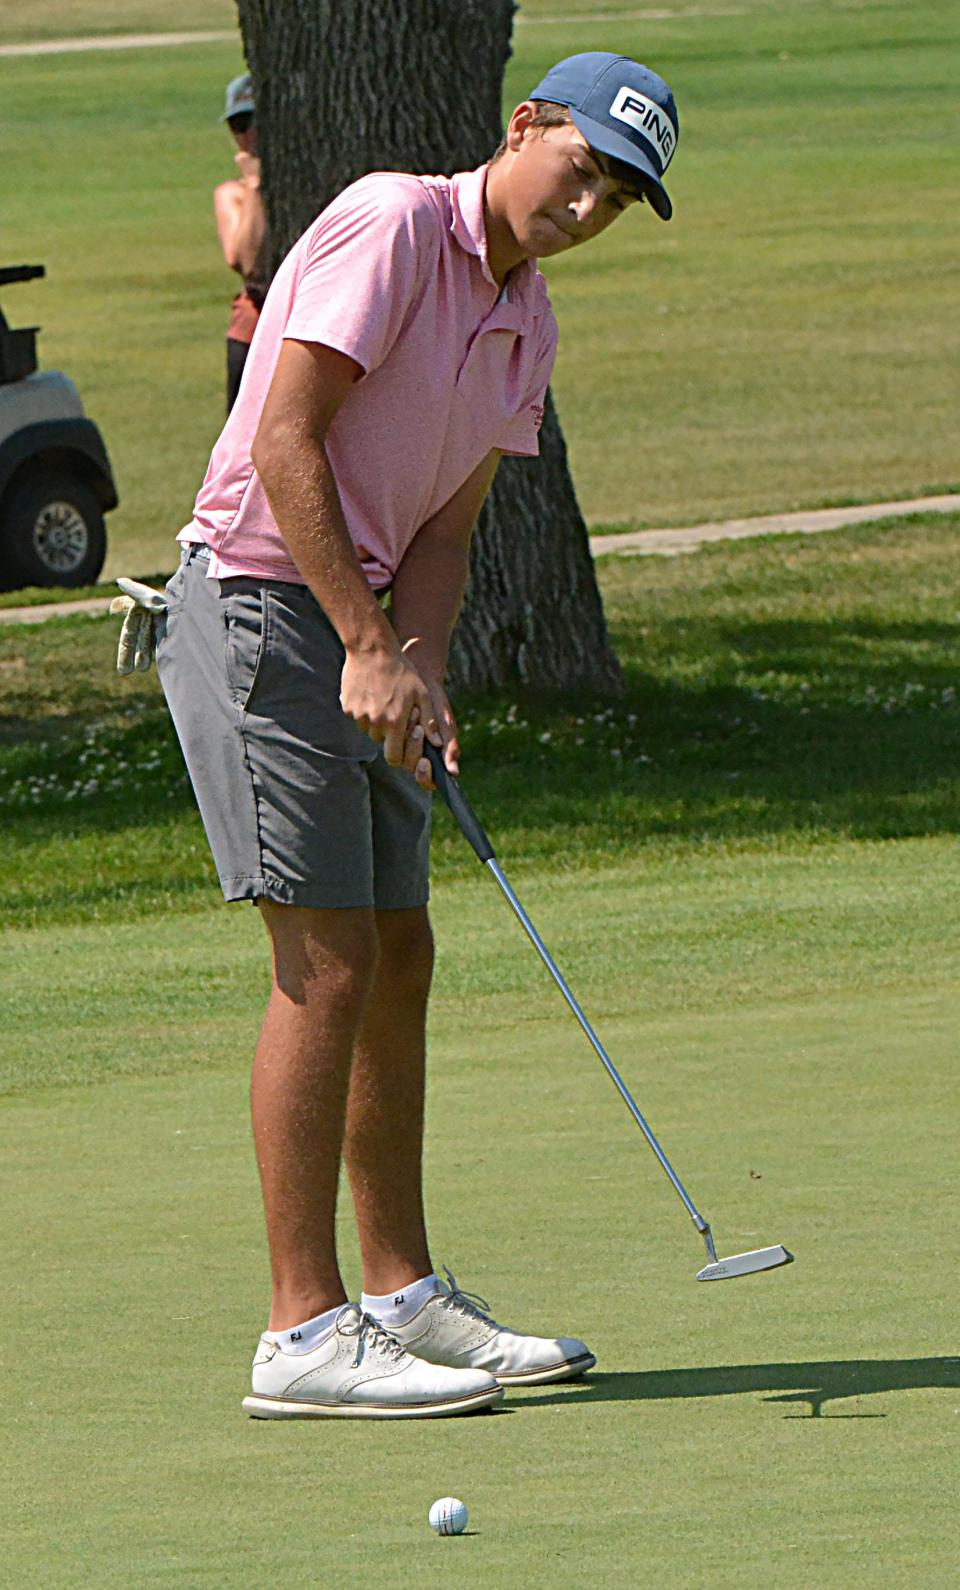 Finn Anderson de Aberdeen observa su putt en el número 1 rojo durante el juego de la división de niños de 14-15 años en el Campeonato Junior de la Asociación de Golf de Dakota del Sur en el campo de golf Cattail Crossing el lunes 24 de julio de 2023.